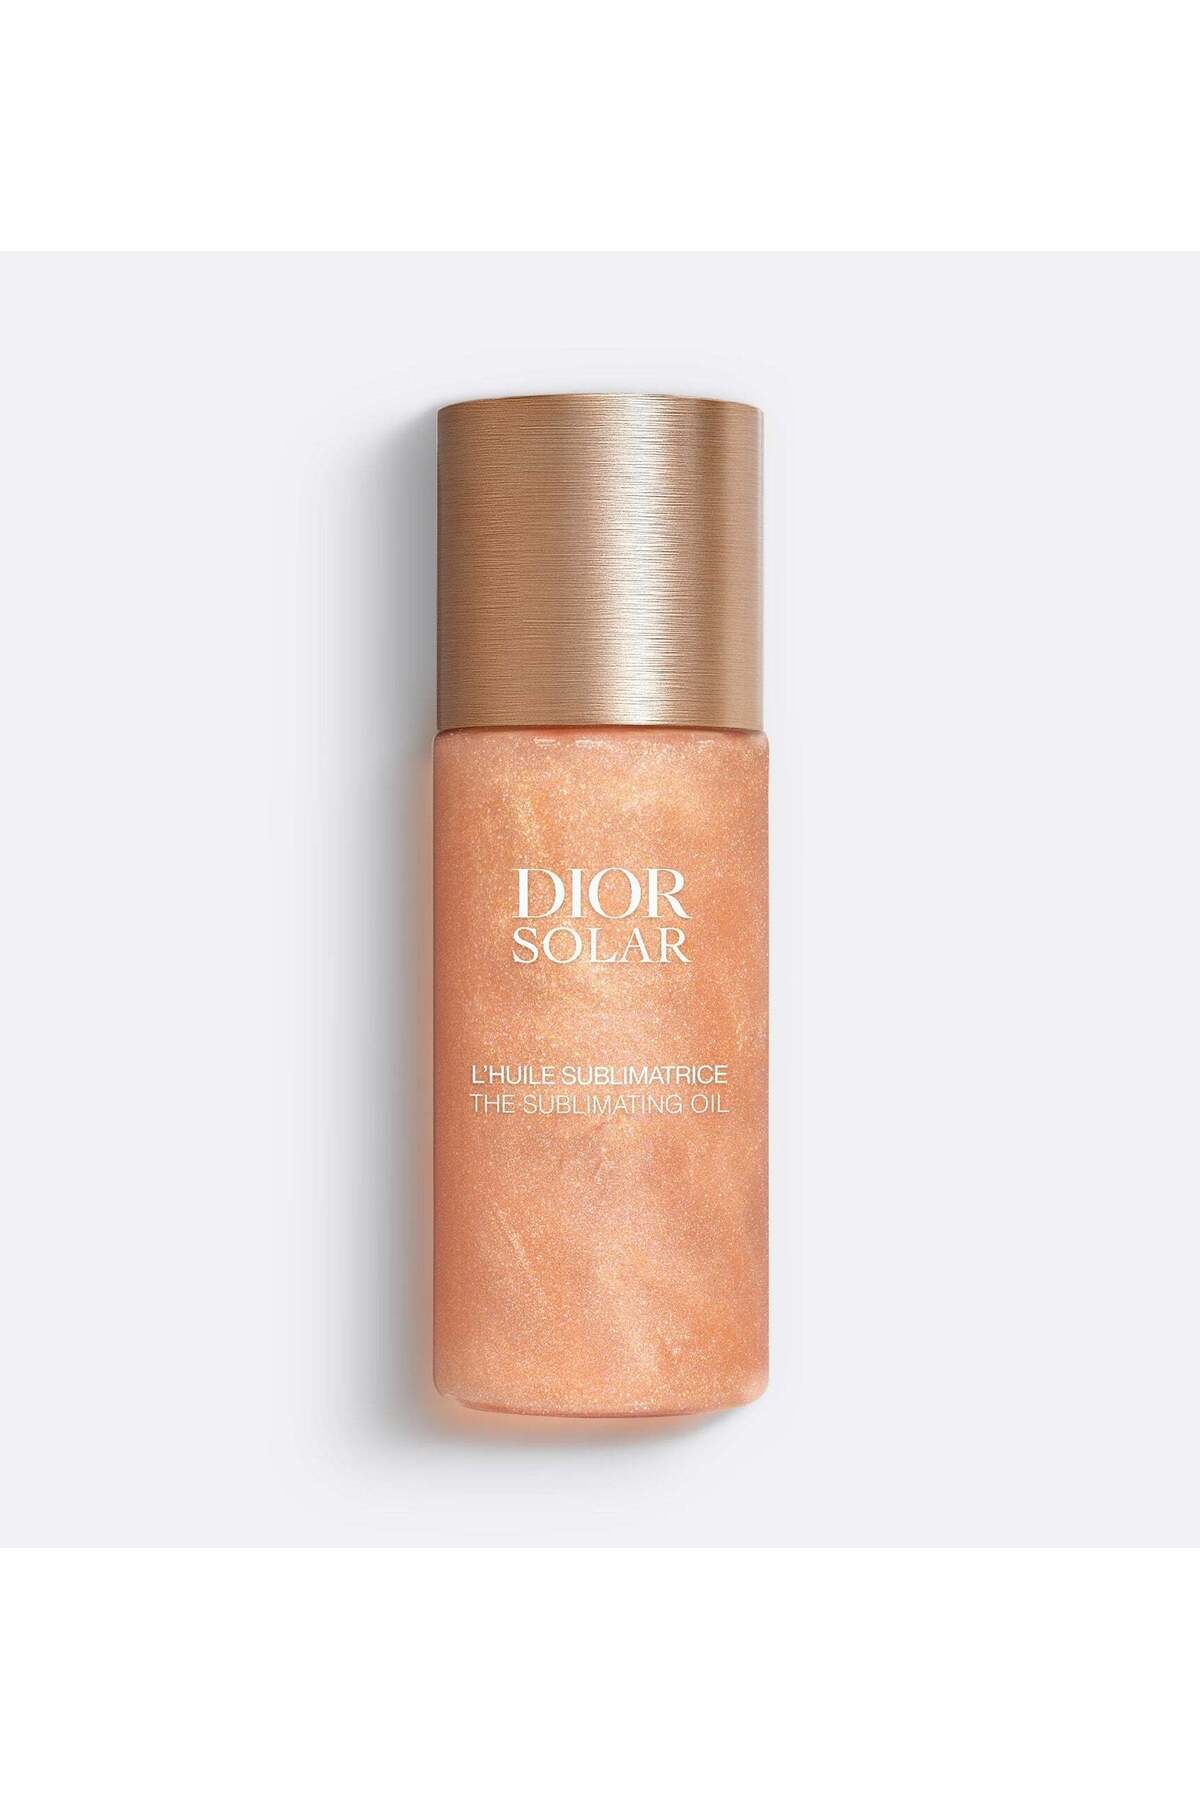 Dior SOLAR THE SUBLIMATING OIL - Nemlendirici Ve Ayınlatıcı Yüz, Vücut, Saç Yağı 125 ML